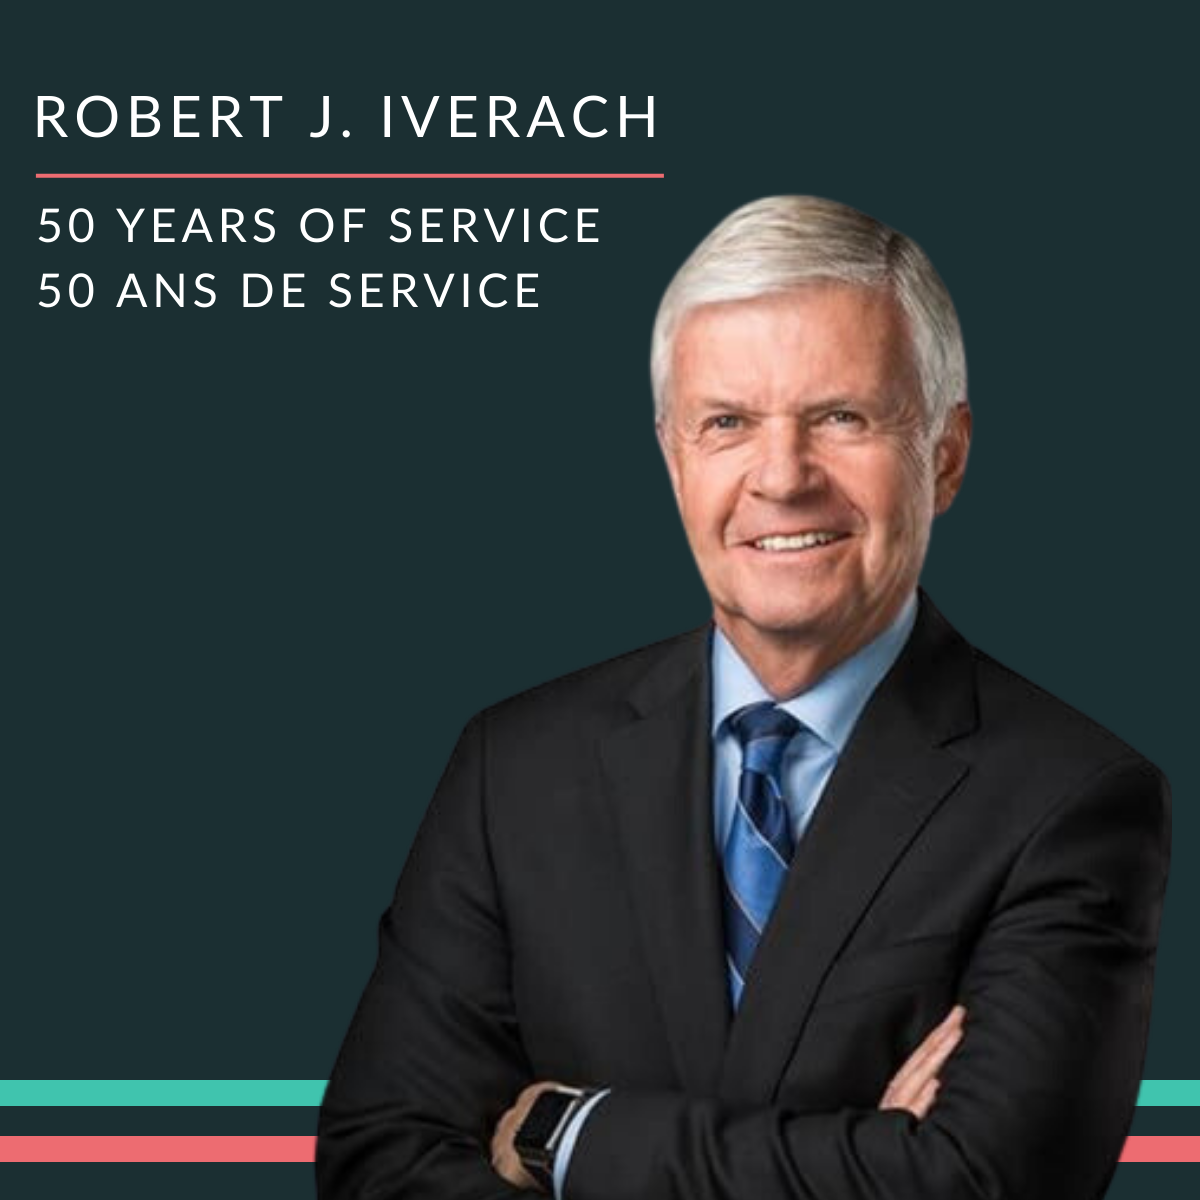 Félicitations à Robert J. Iverach, qui célèbre 50 ans de contribution à la profession juridique